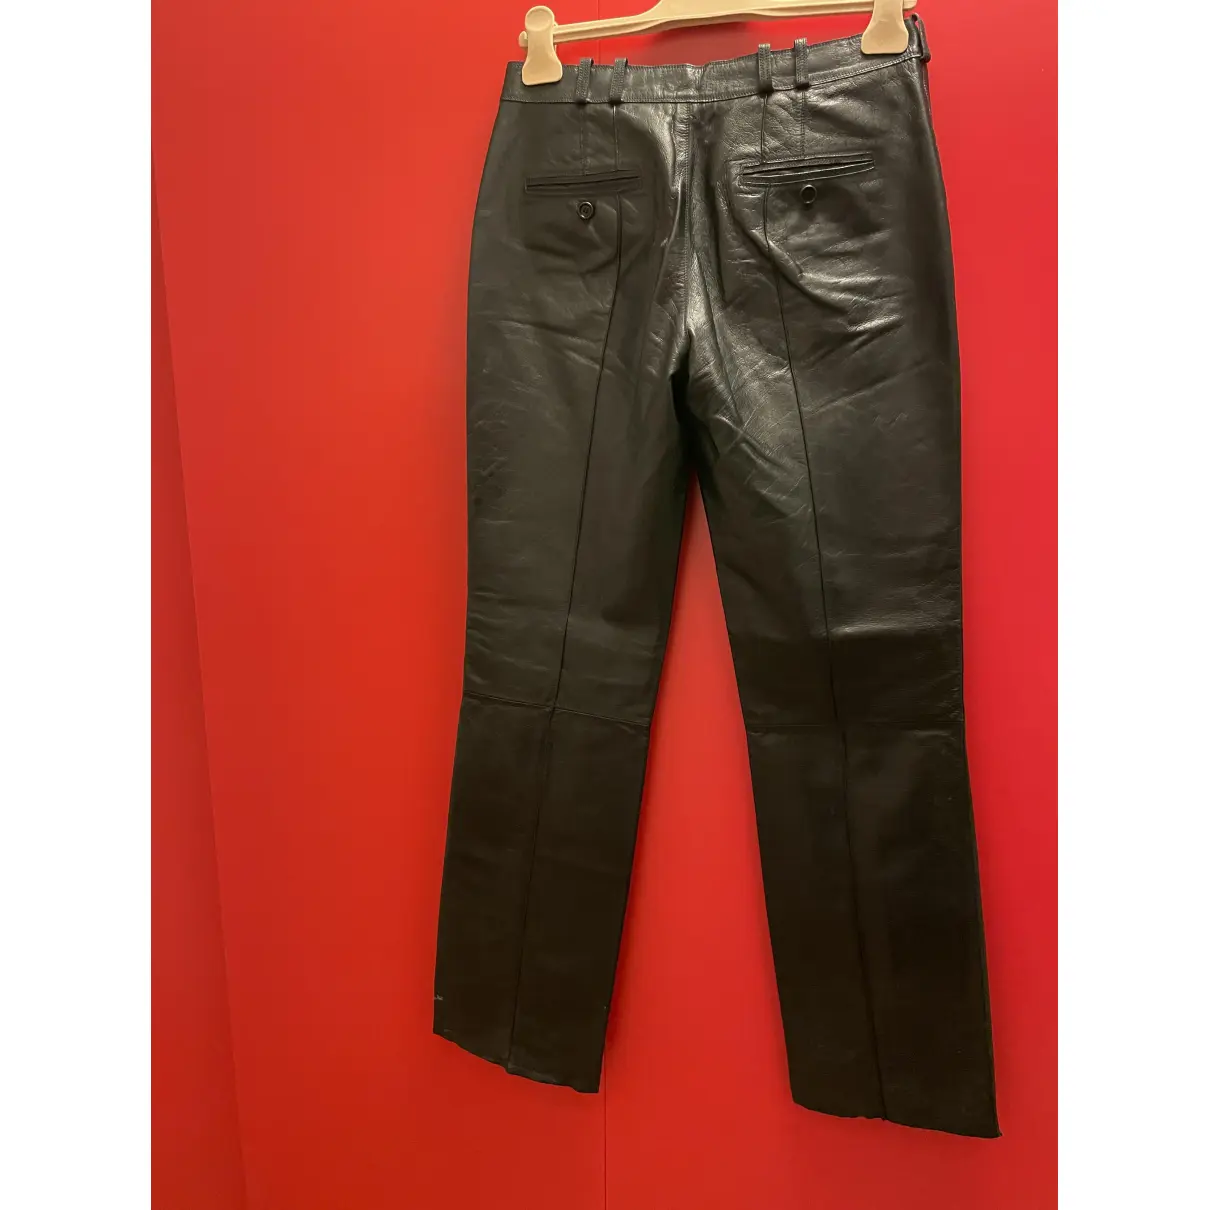 Buy Loewe Leather straight pants online